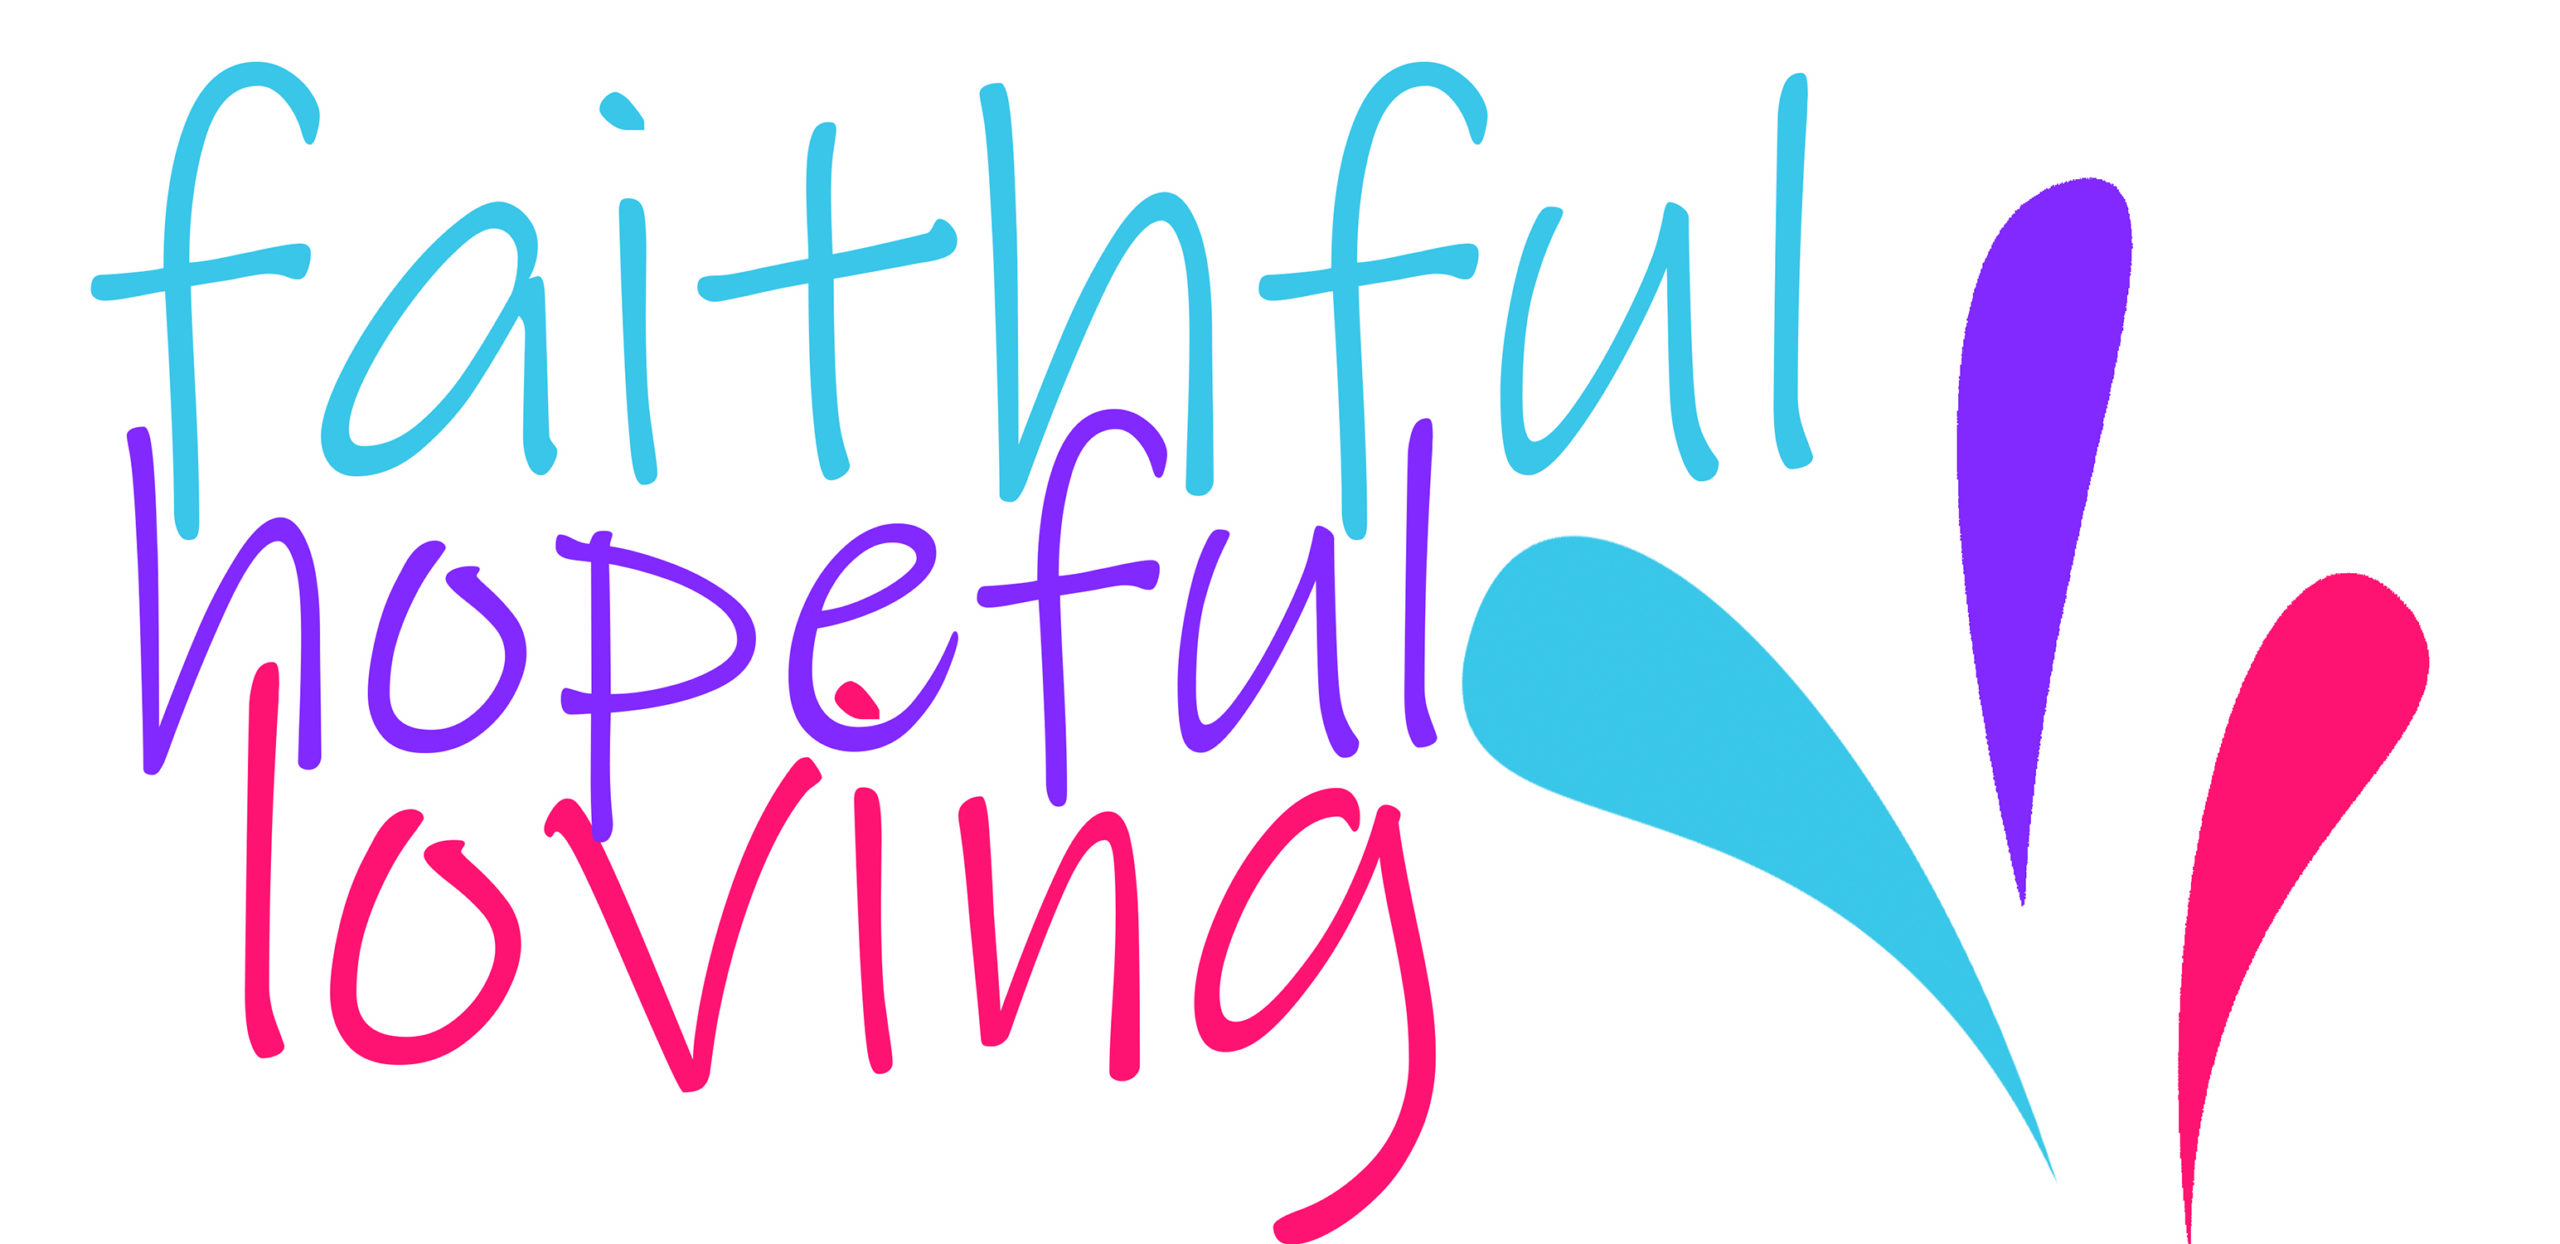 Faithful, Hopeful, Loving logo